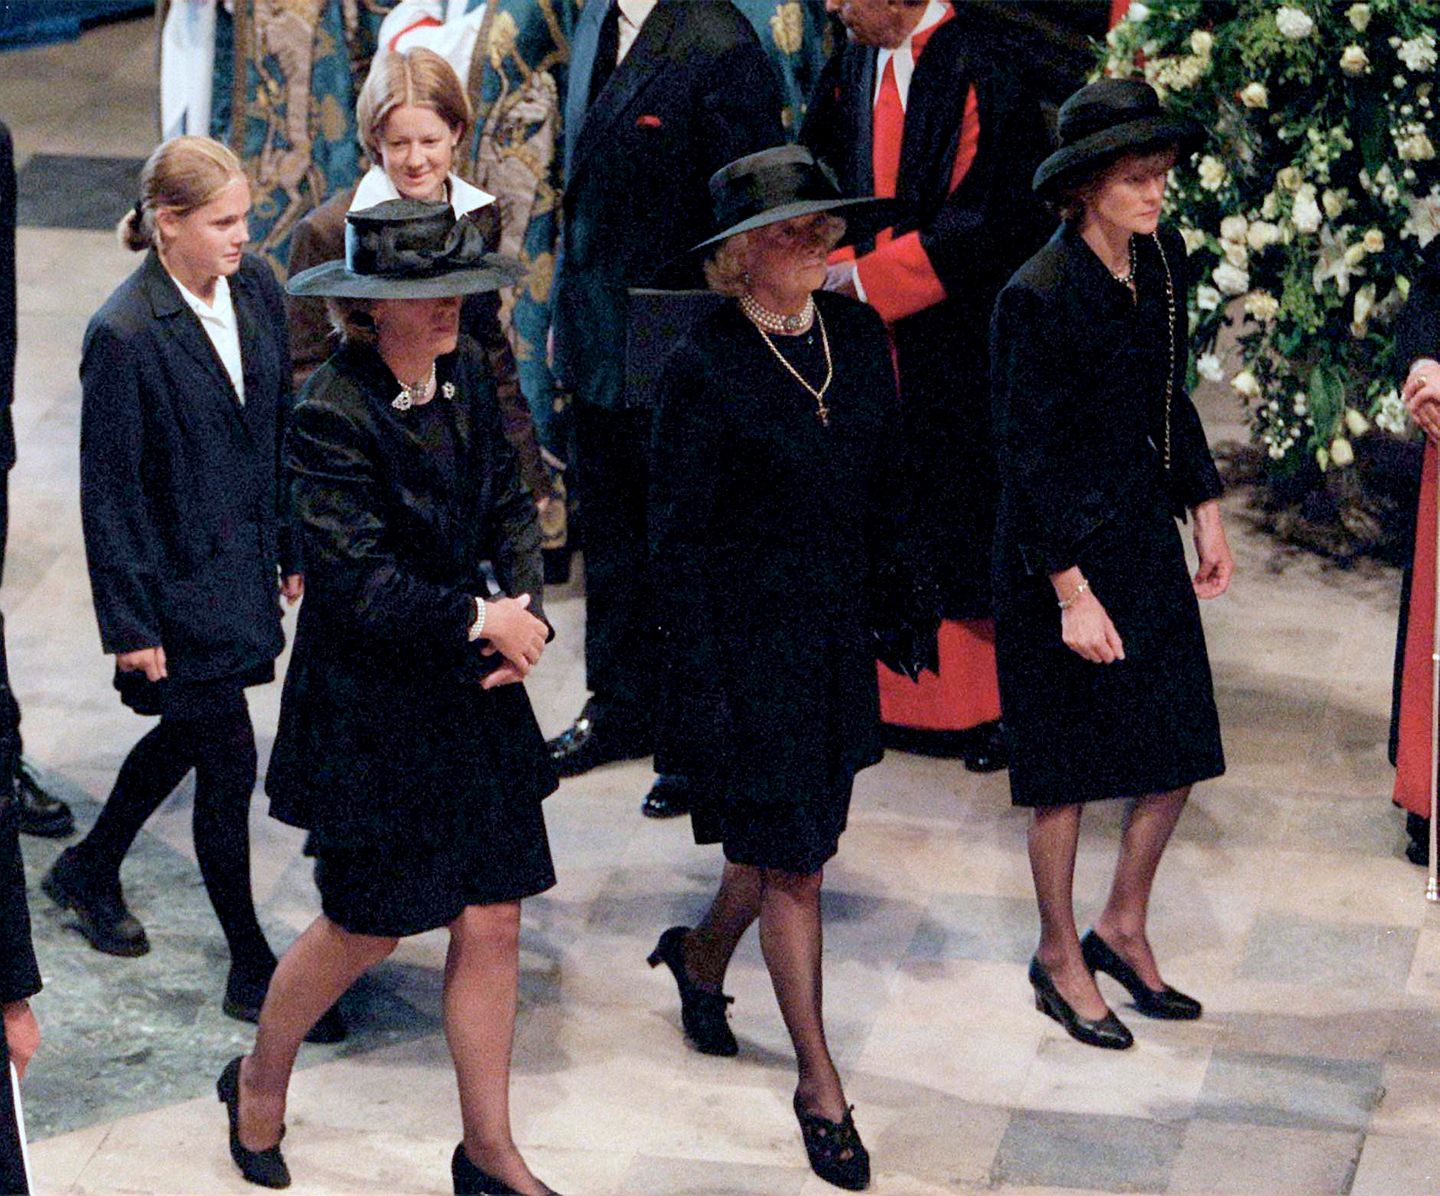 Die Familie von Diana betritt die Kirche (v.l.n.r.): ihre Schwester Jane Fellowes, ihre Mutter Frances Shand-Kydd und ihre Schwester Lady Sarah Mccorquodale. Hinter ihnen gehen Dianas Nichten Eleanor und Laura Fellowes.